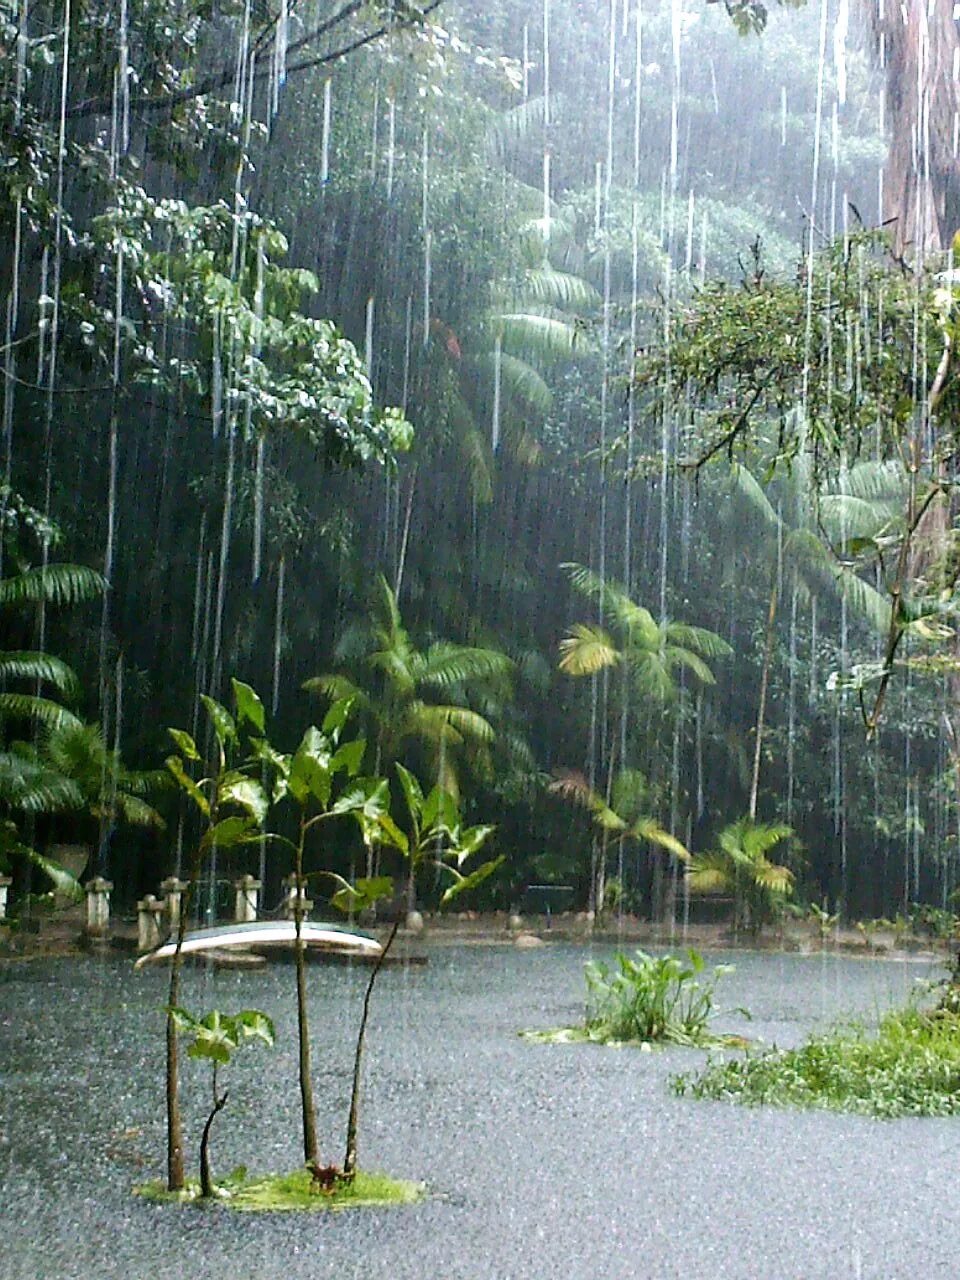 Полог дождевого тропического леса. Дождь в тропическом лесу. Тропический лес. Тропический дождевой лес. Душно и влажно